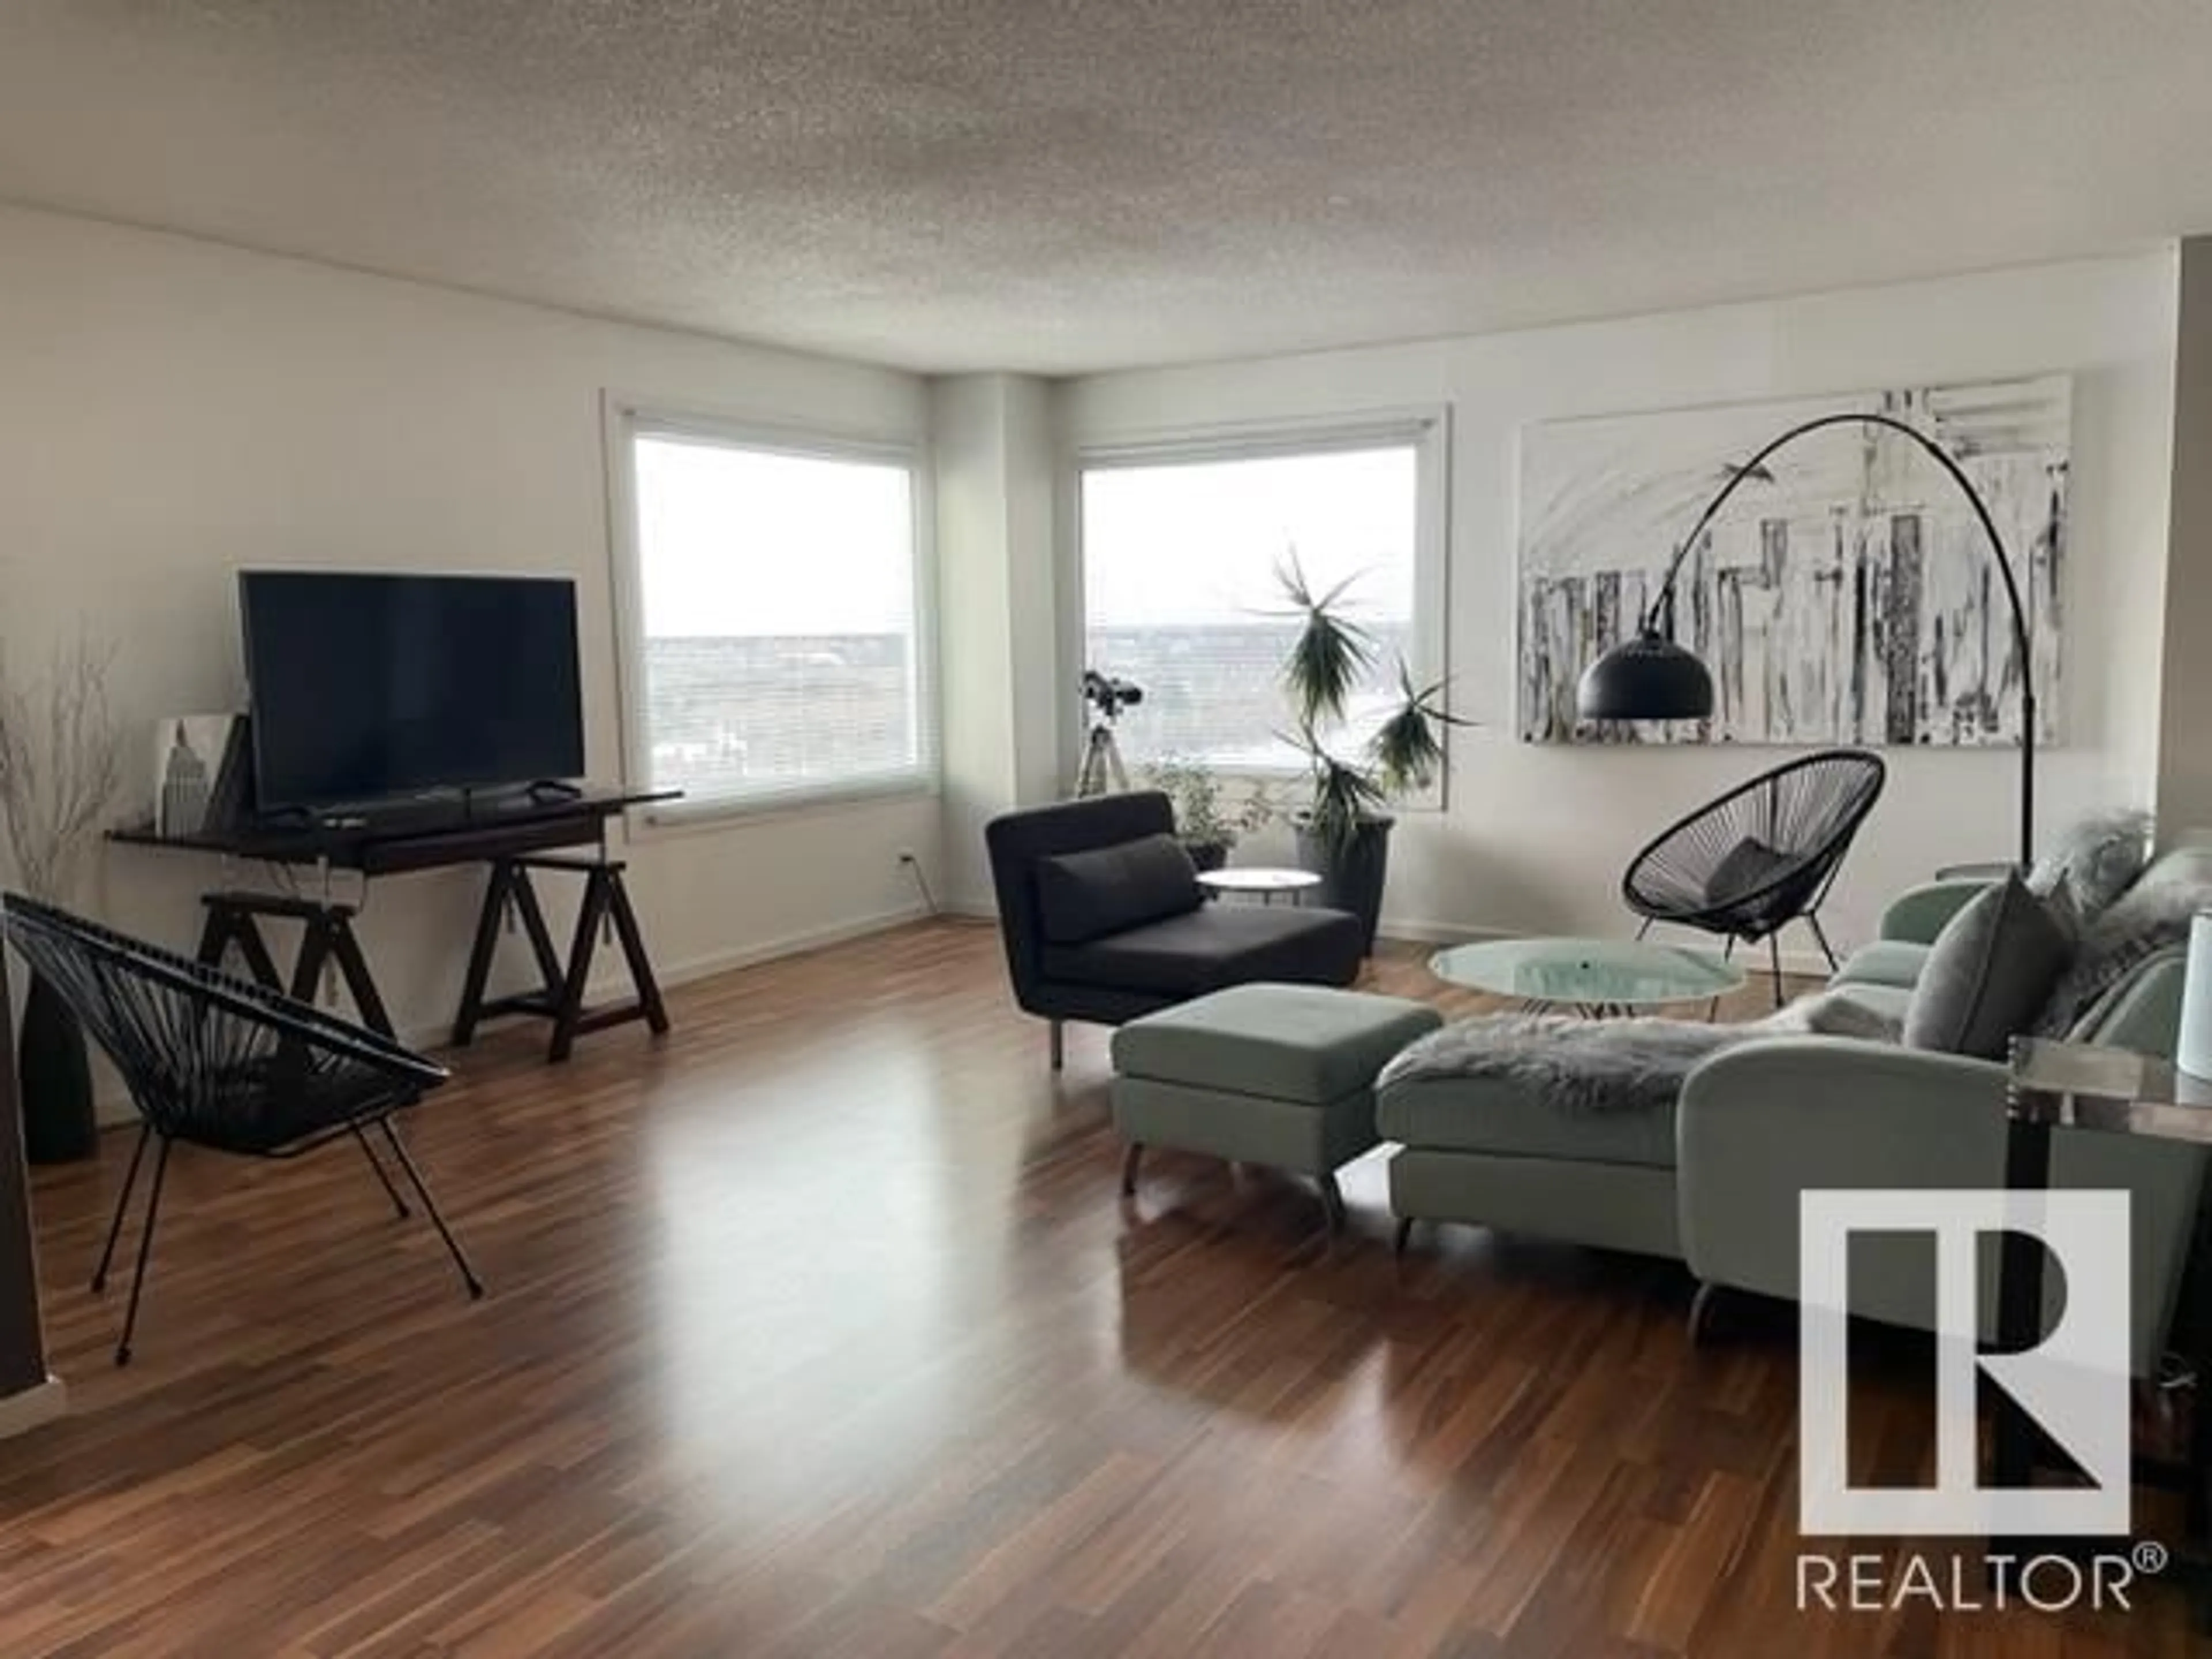 Living room for #802 12303 jasper AV NW, Edmonton Alberta T5N3K7